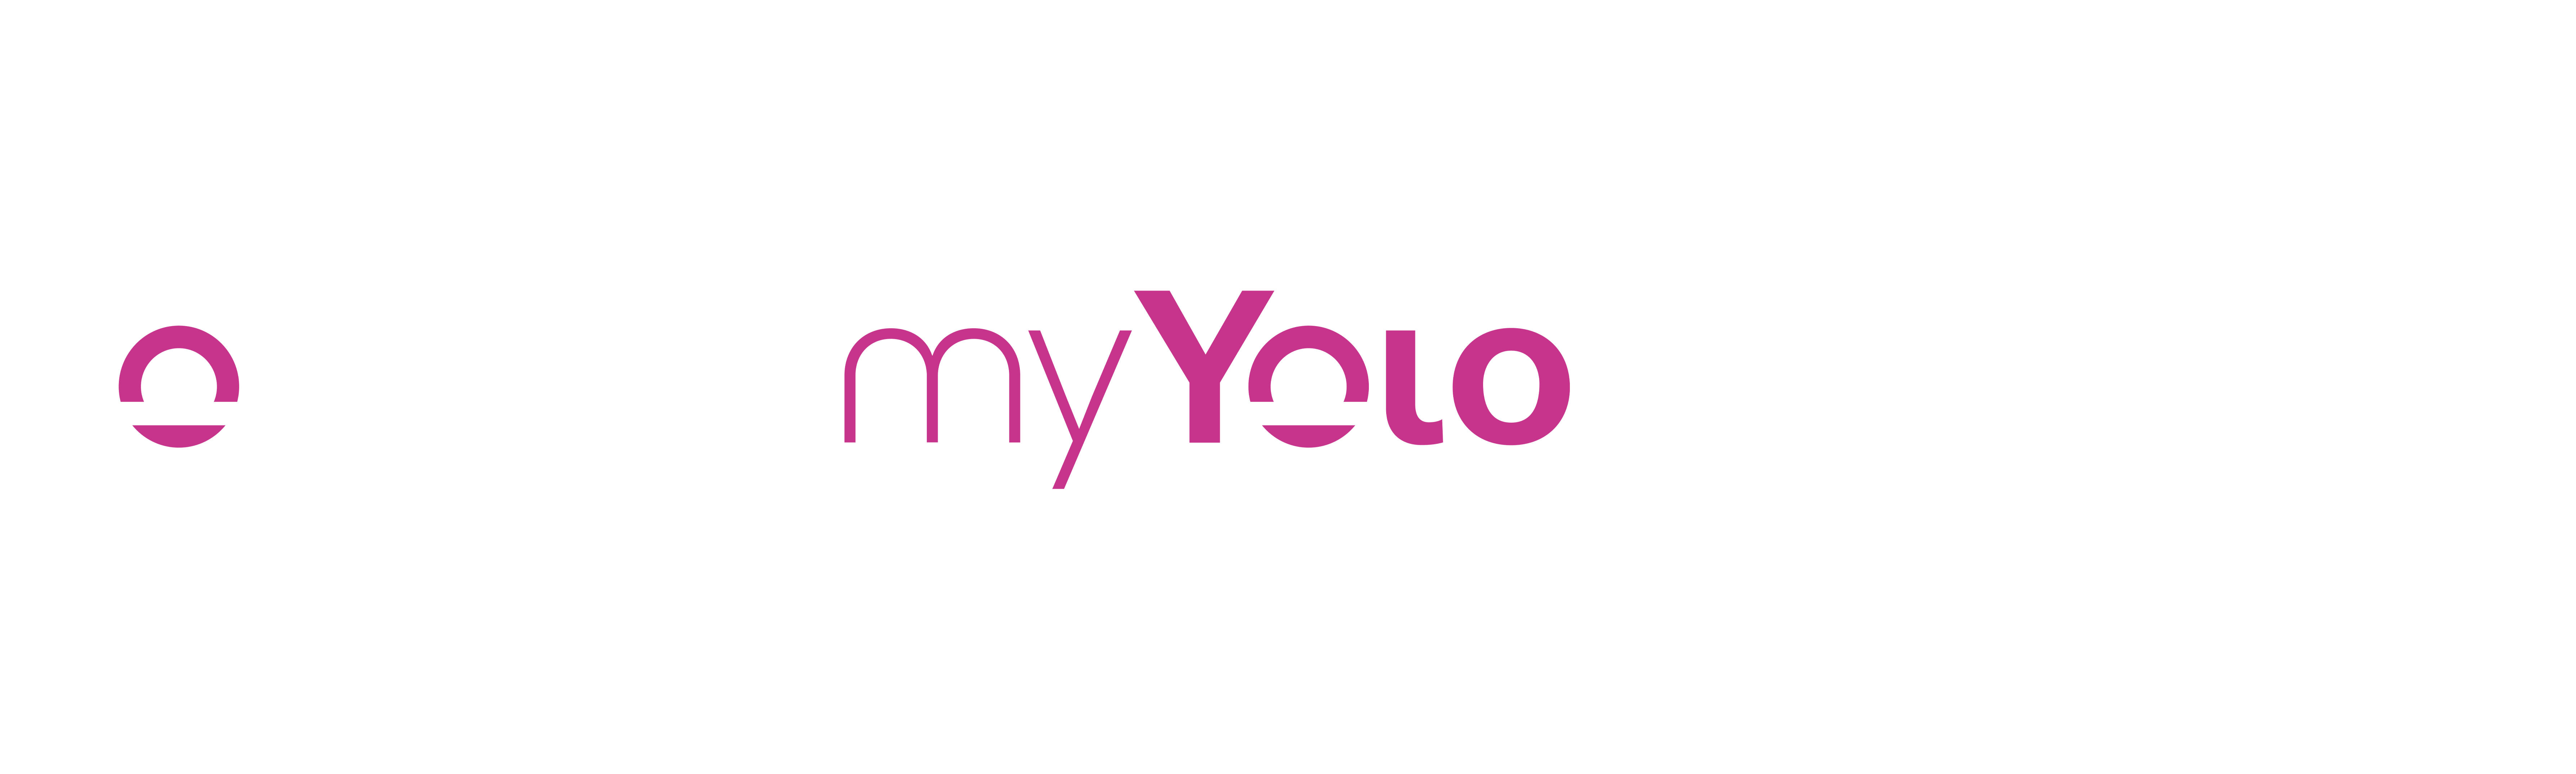 Logo_nhc_myYolo_white2_RGB_NEW-1